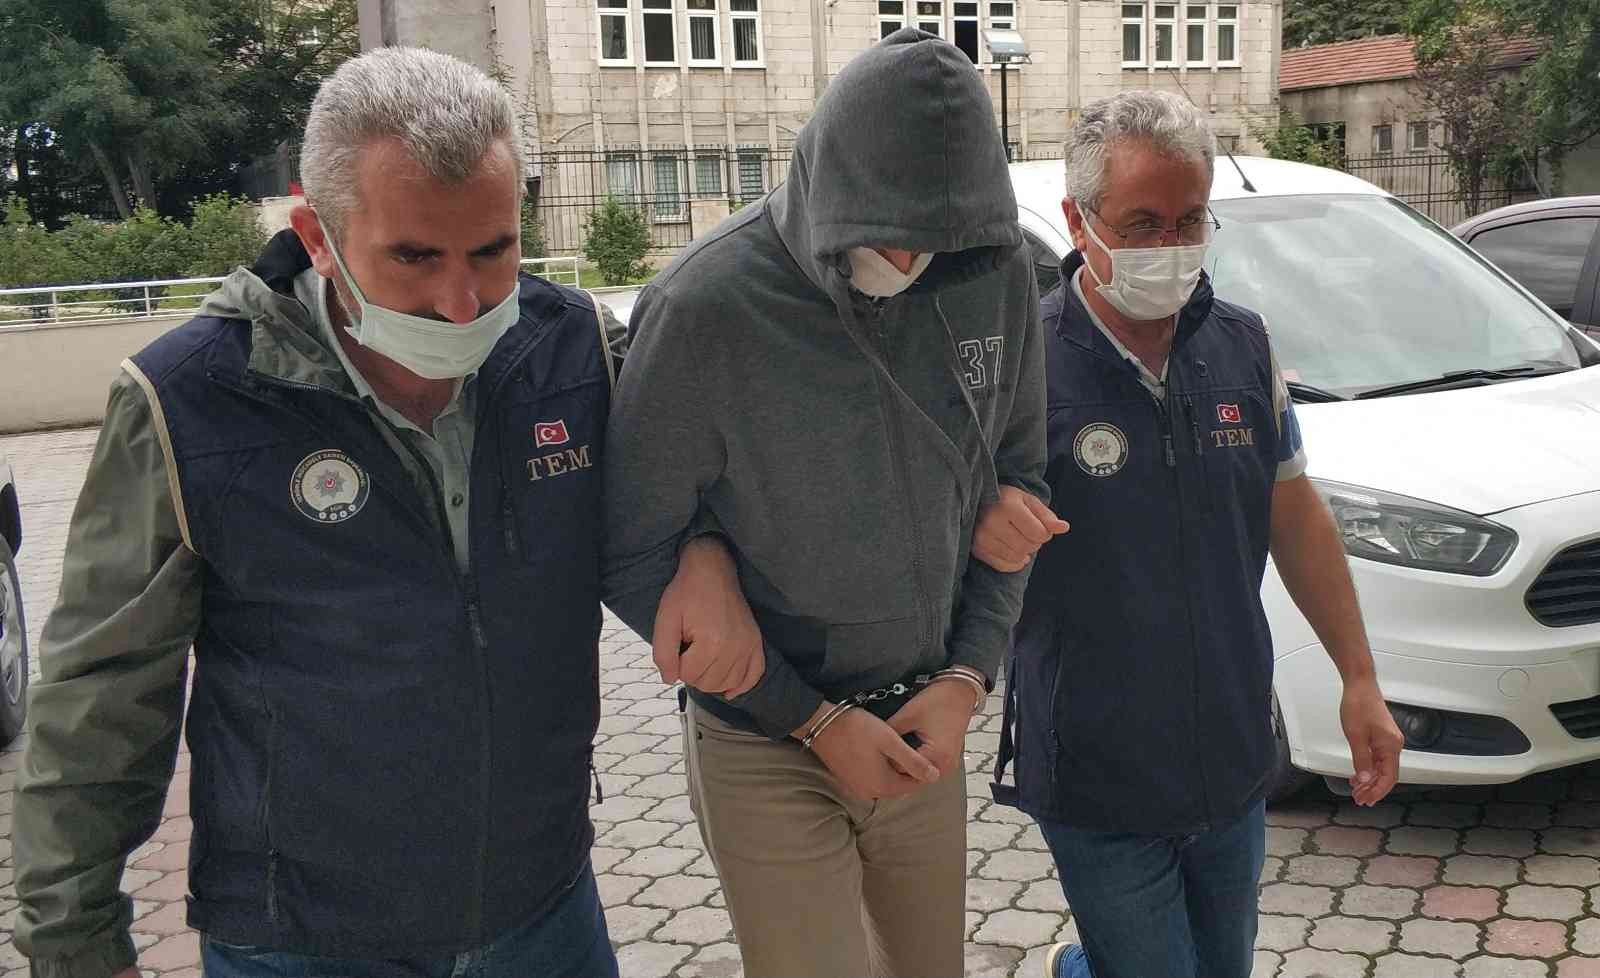 Denizli’de FETÖ ve PKK operasyonu: 2 tutuklama #denizli